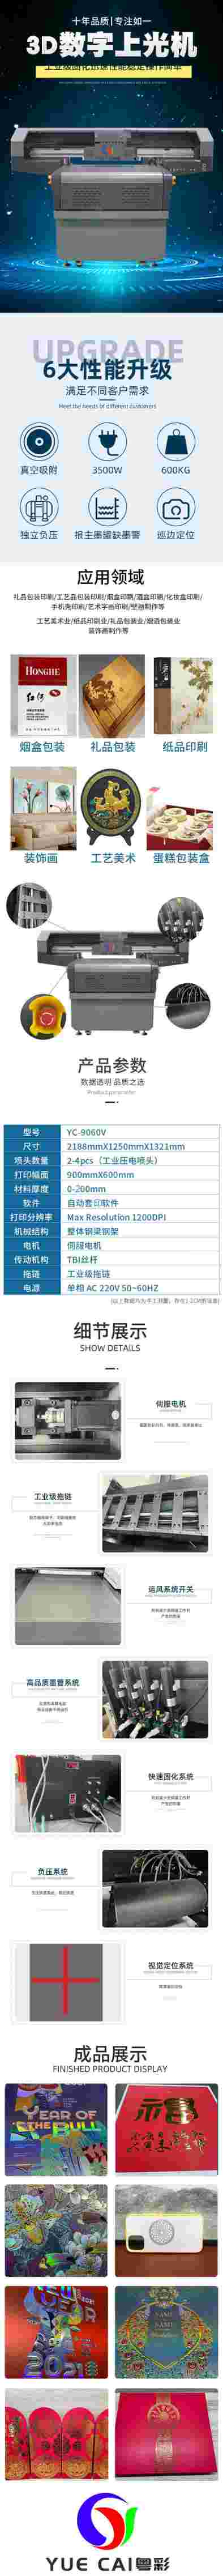 供应深圳粤彩 3D数字上光机YC-9060V数码增效印后增效